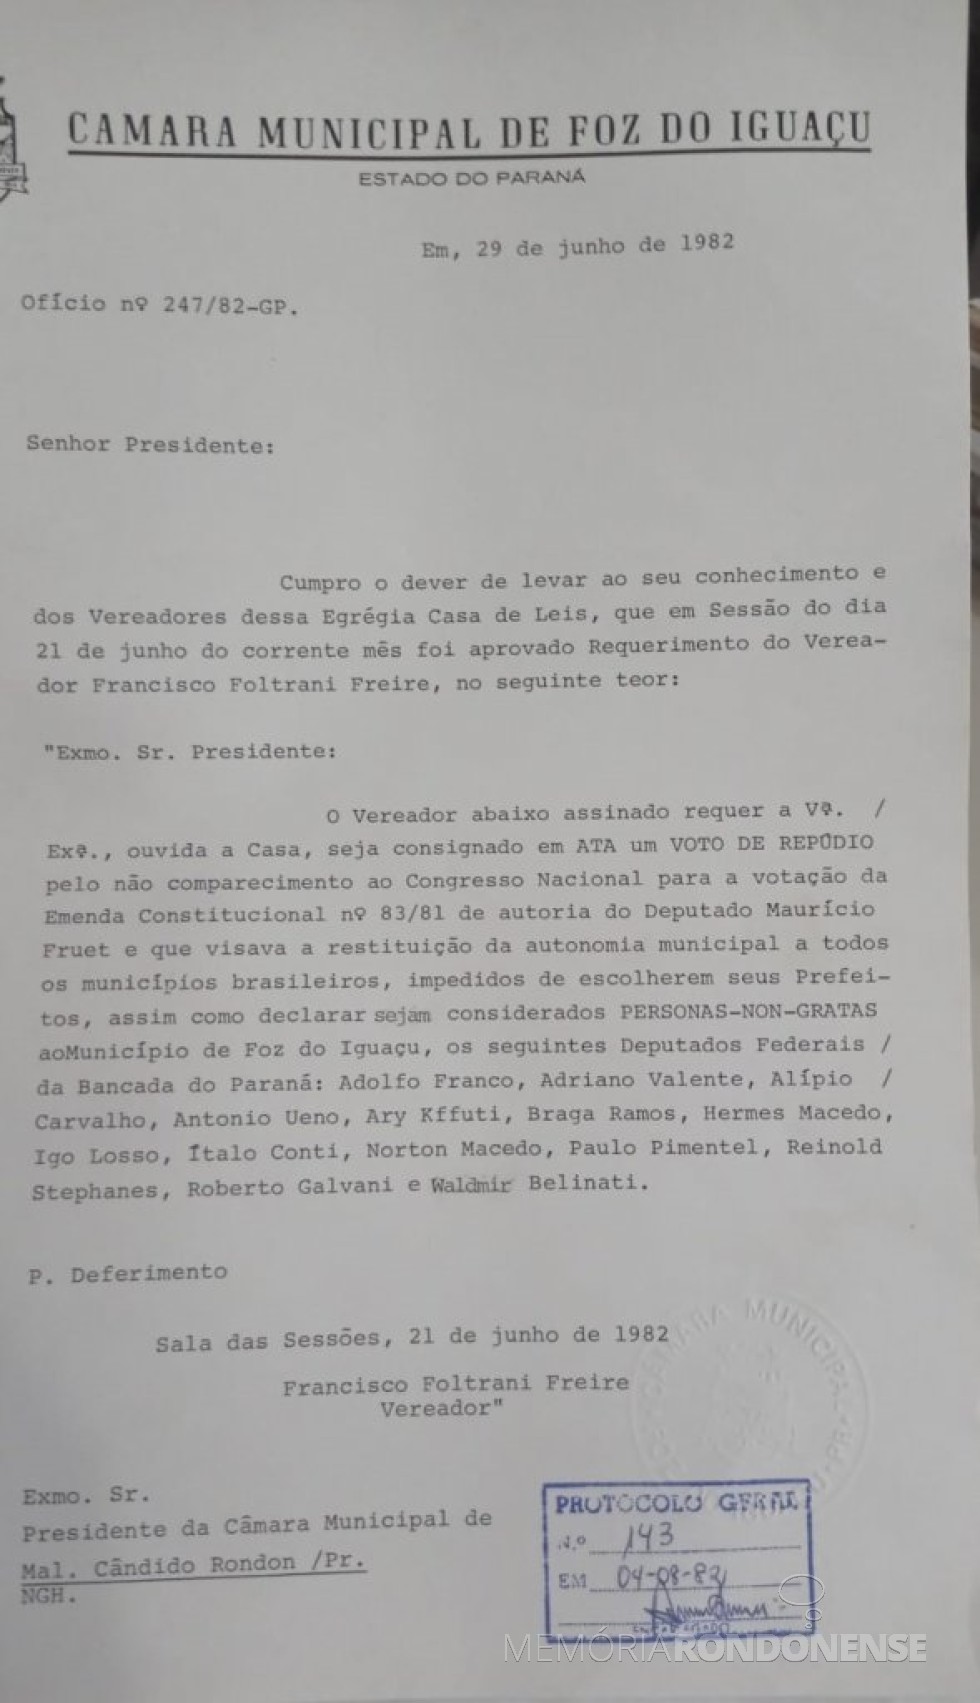 || Parte inicial do expediente da Câmara Municipal de Foz do Iguaçu dirigido à Câmara Municipal de Marechal Cândido Rondon  ref. a nota de repúdio a deputados federais paraanenses, em junho de 1981.
Imagem: Acervo da Câmara Municipal de Marechal Cândido Rondon - FOTO  4 - 